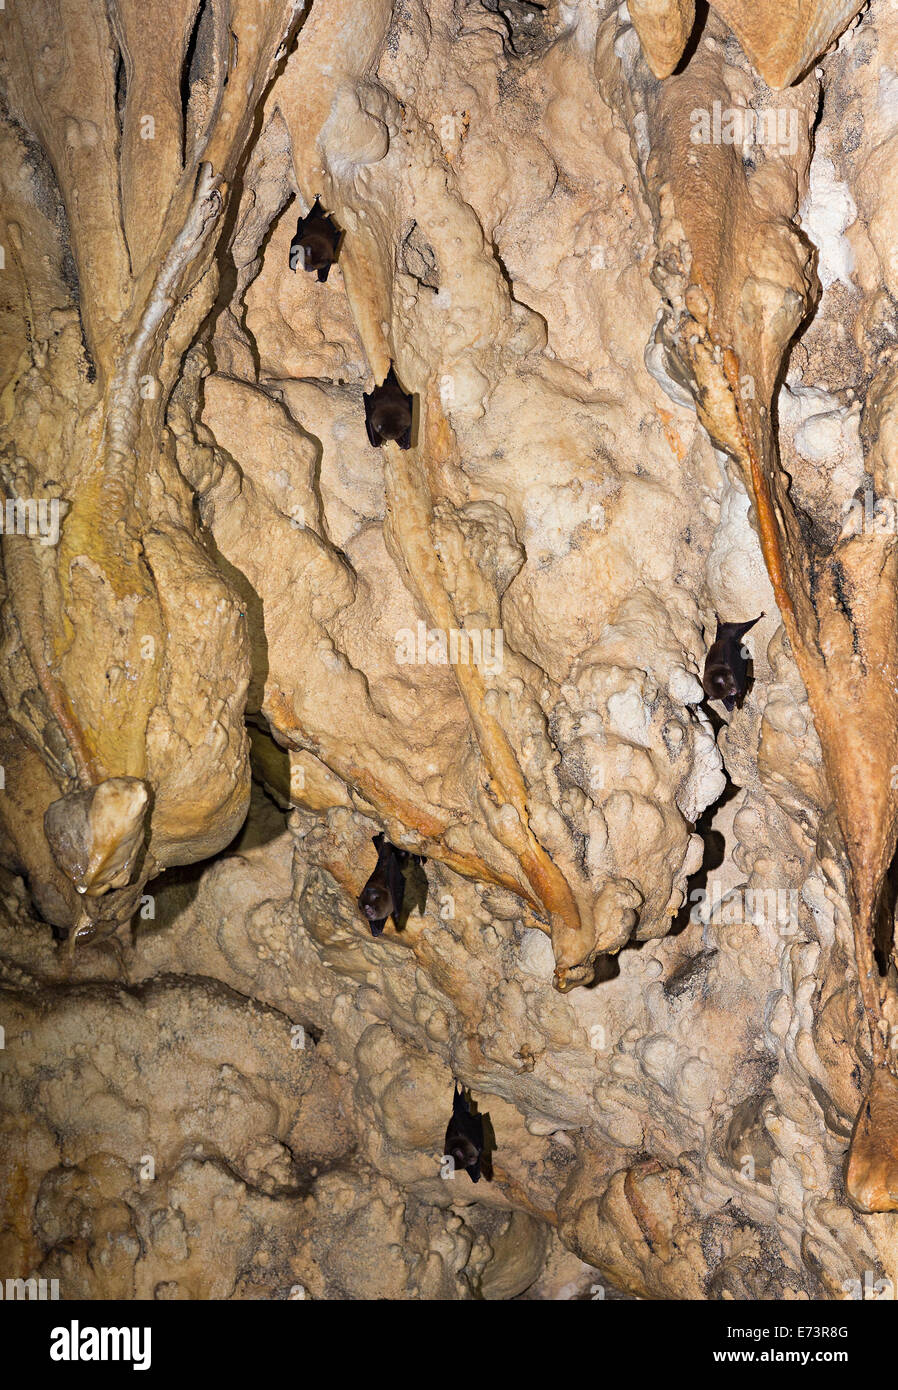 Se posan los murciélagos, caballo de Piedra Cueva, el Parque Nacional de Gunung Mulu, Sarawak, Malasia Foto de stock